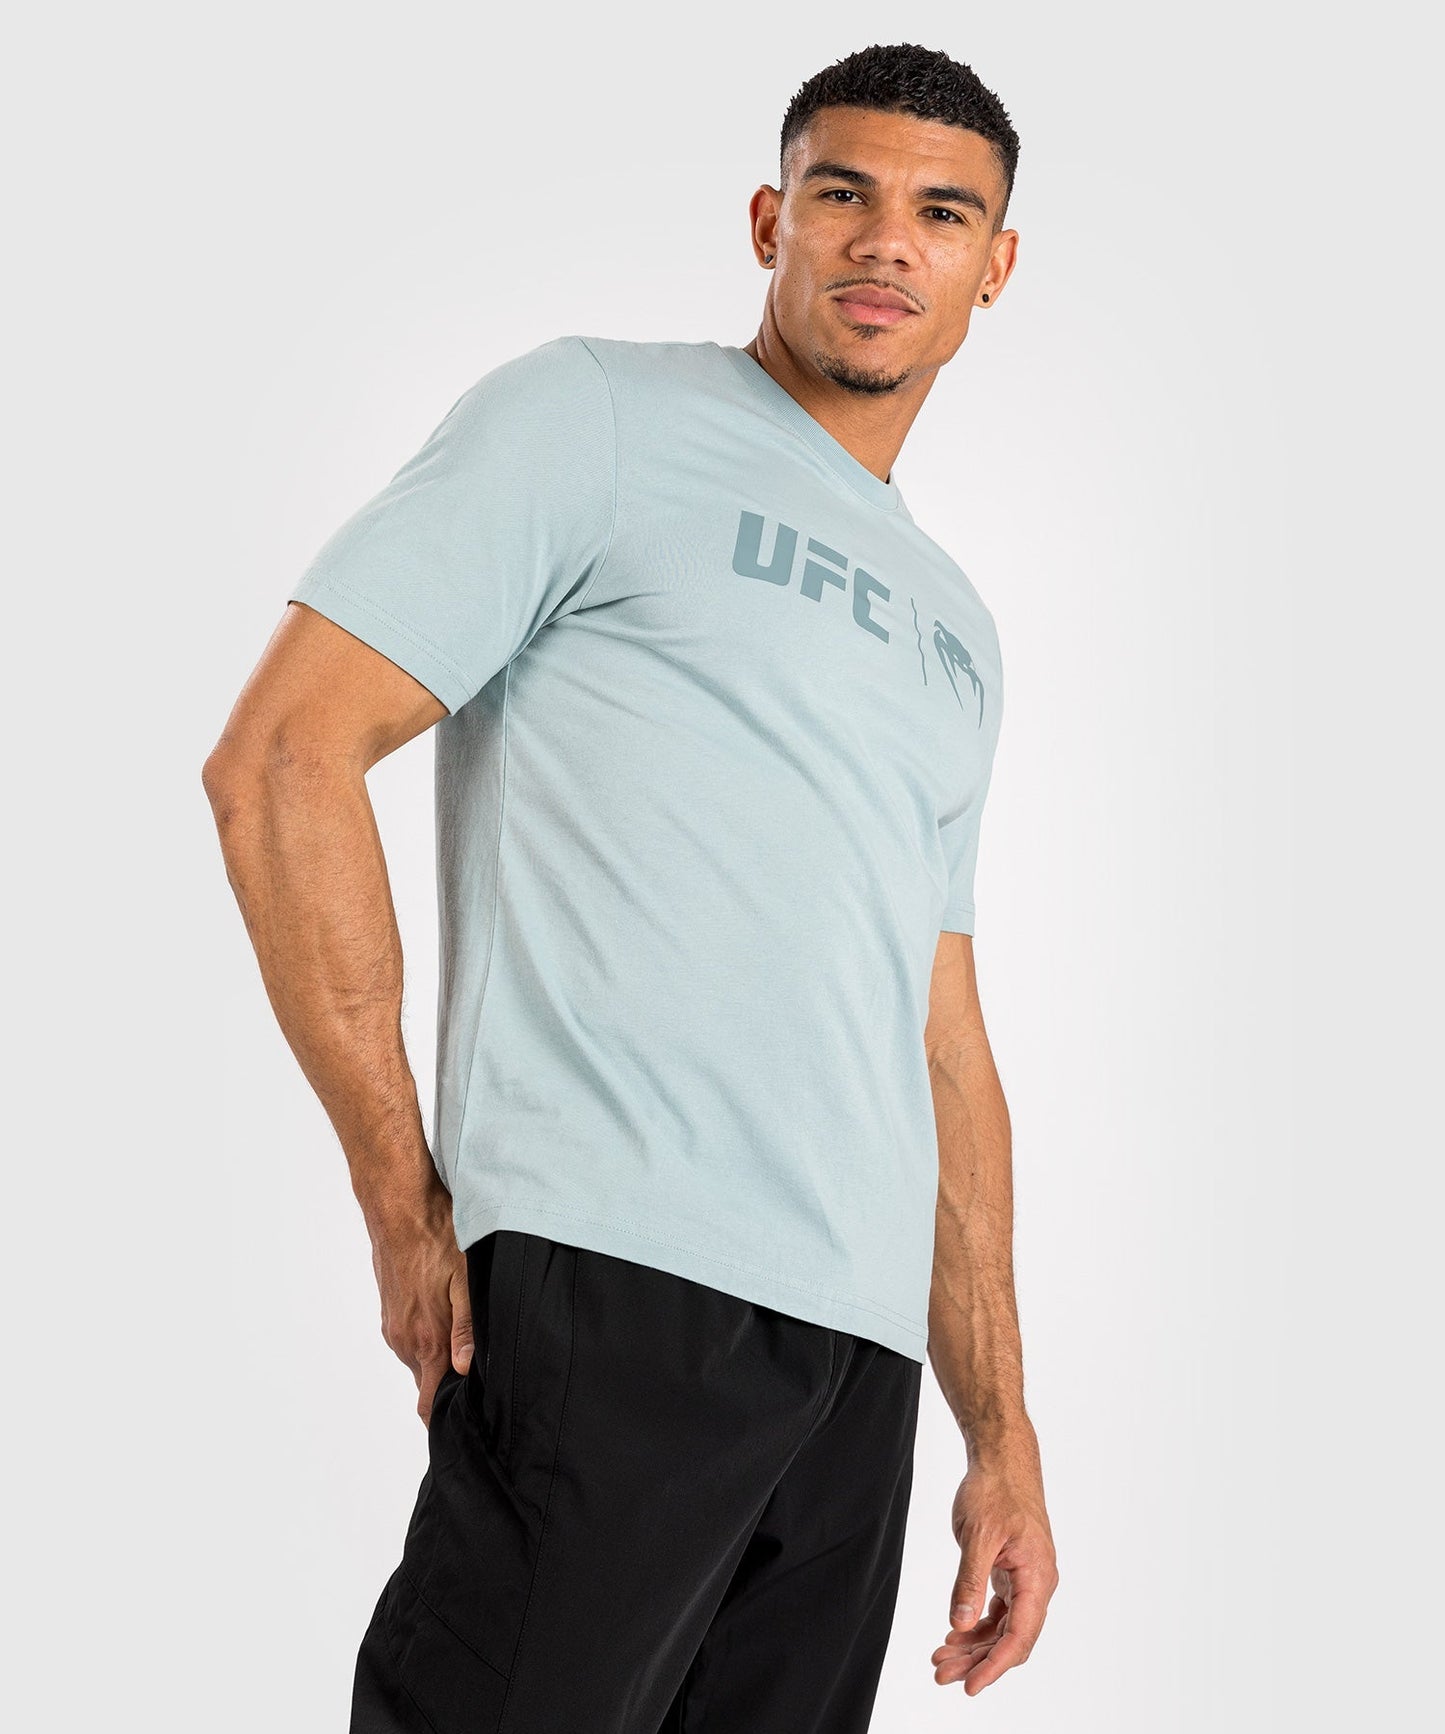 UFC Venum Classic  Camiseta - Ocean Blue